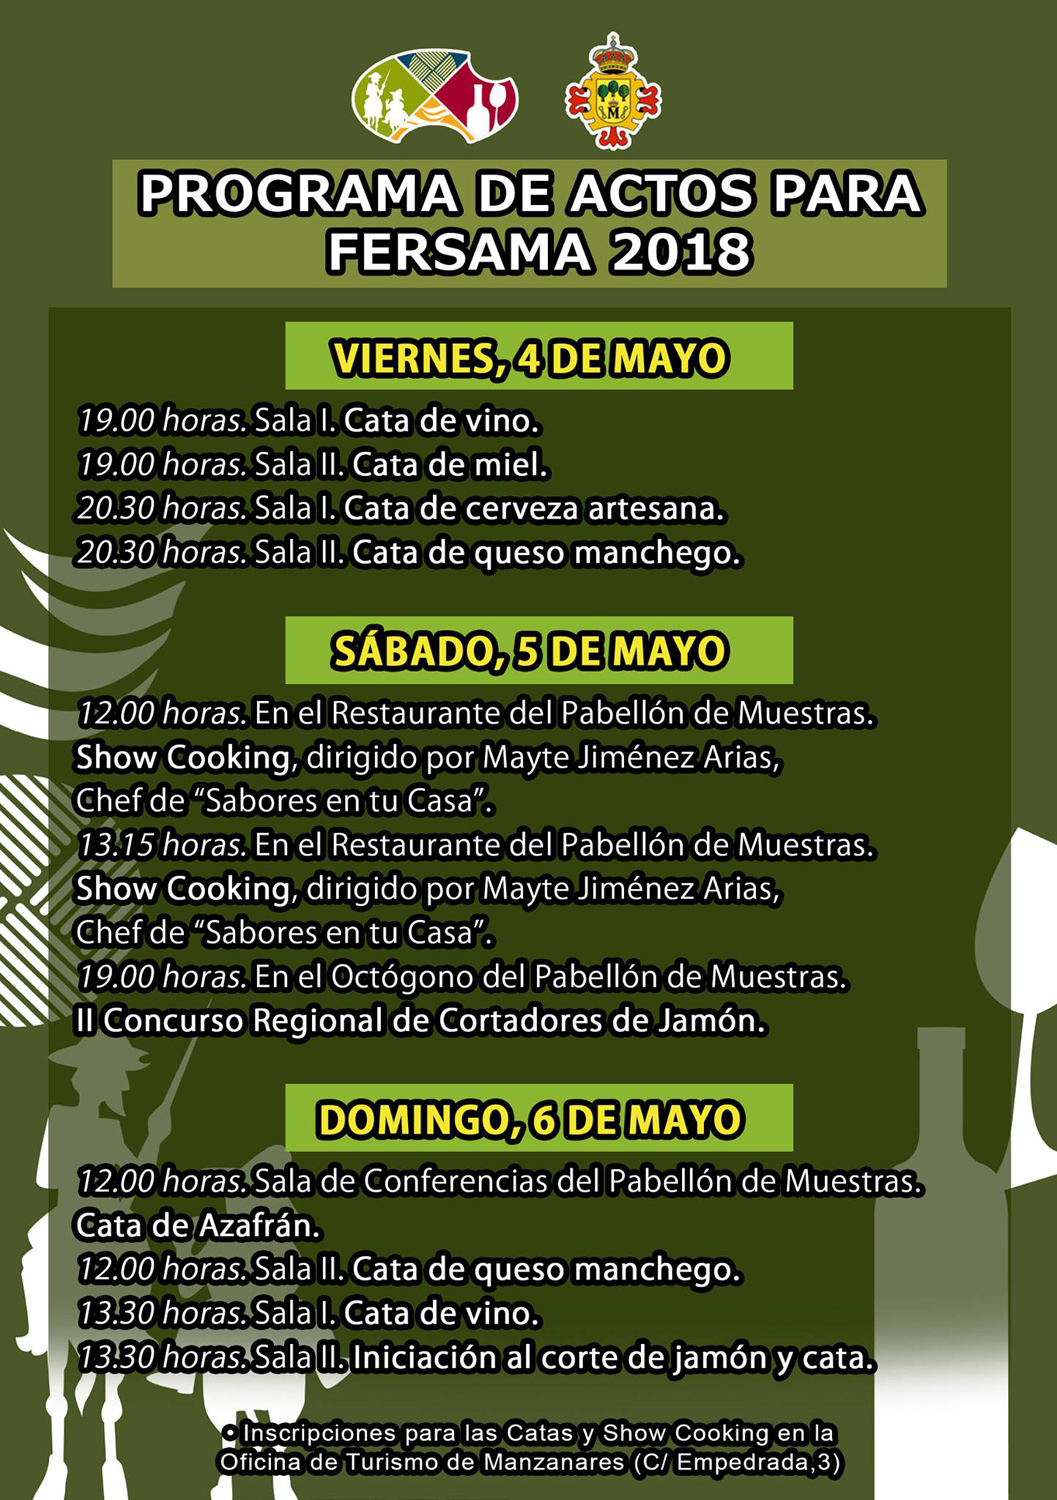 Feria del sabor Manchego en Manzanares 2018